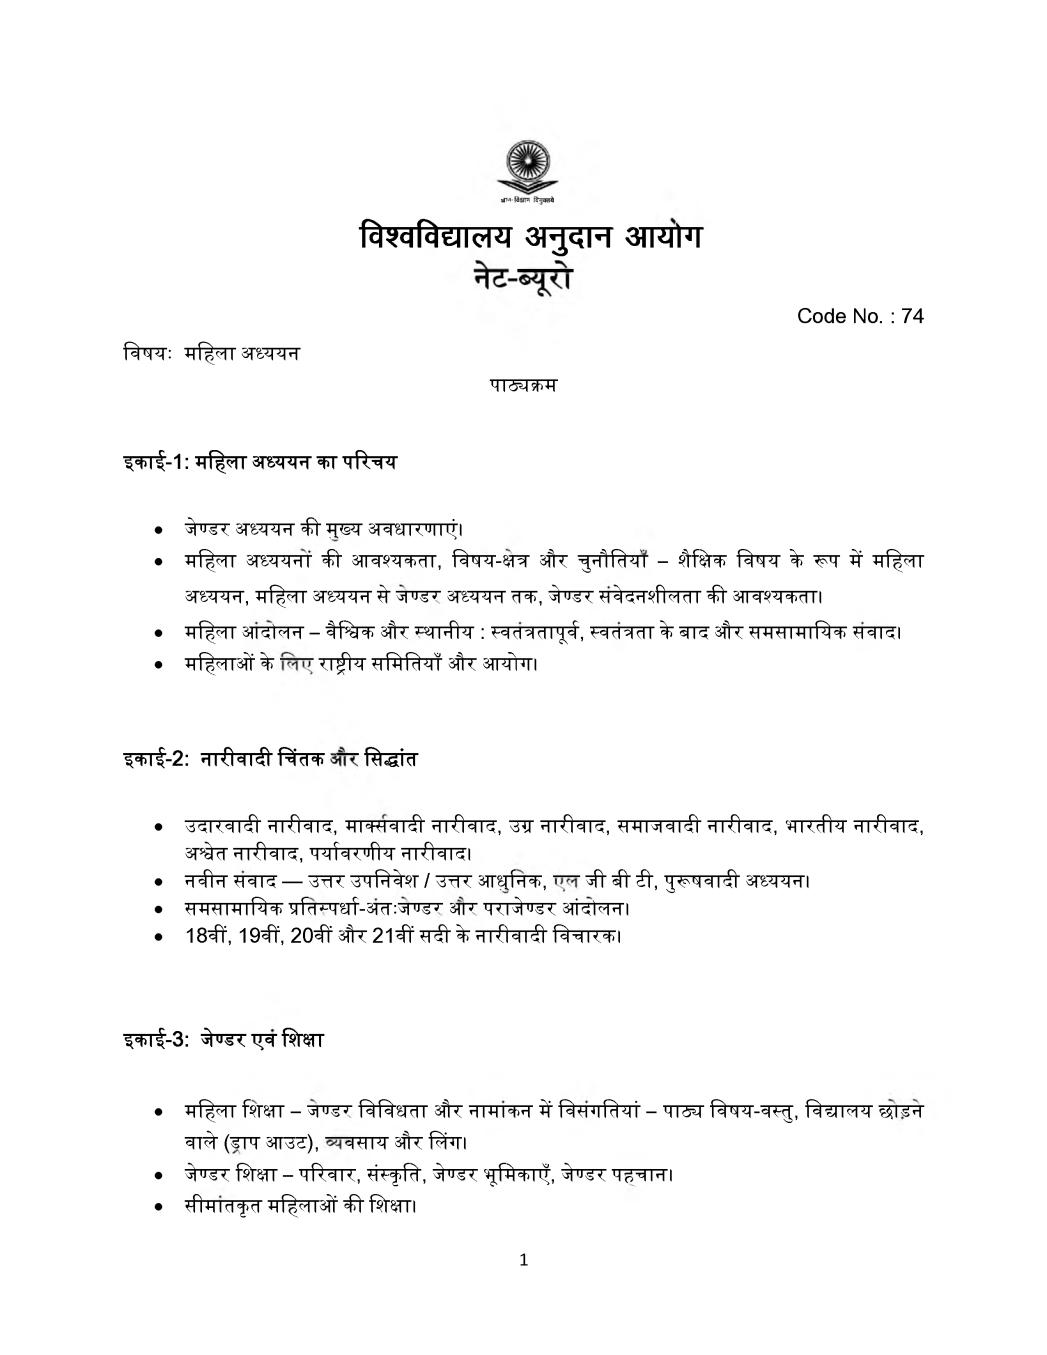 UGC NET Syllabus for Women Studies 2020 in Hindi - Page 1